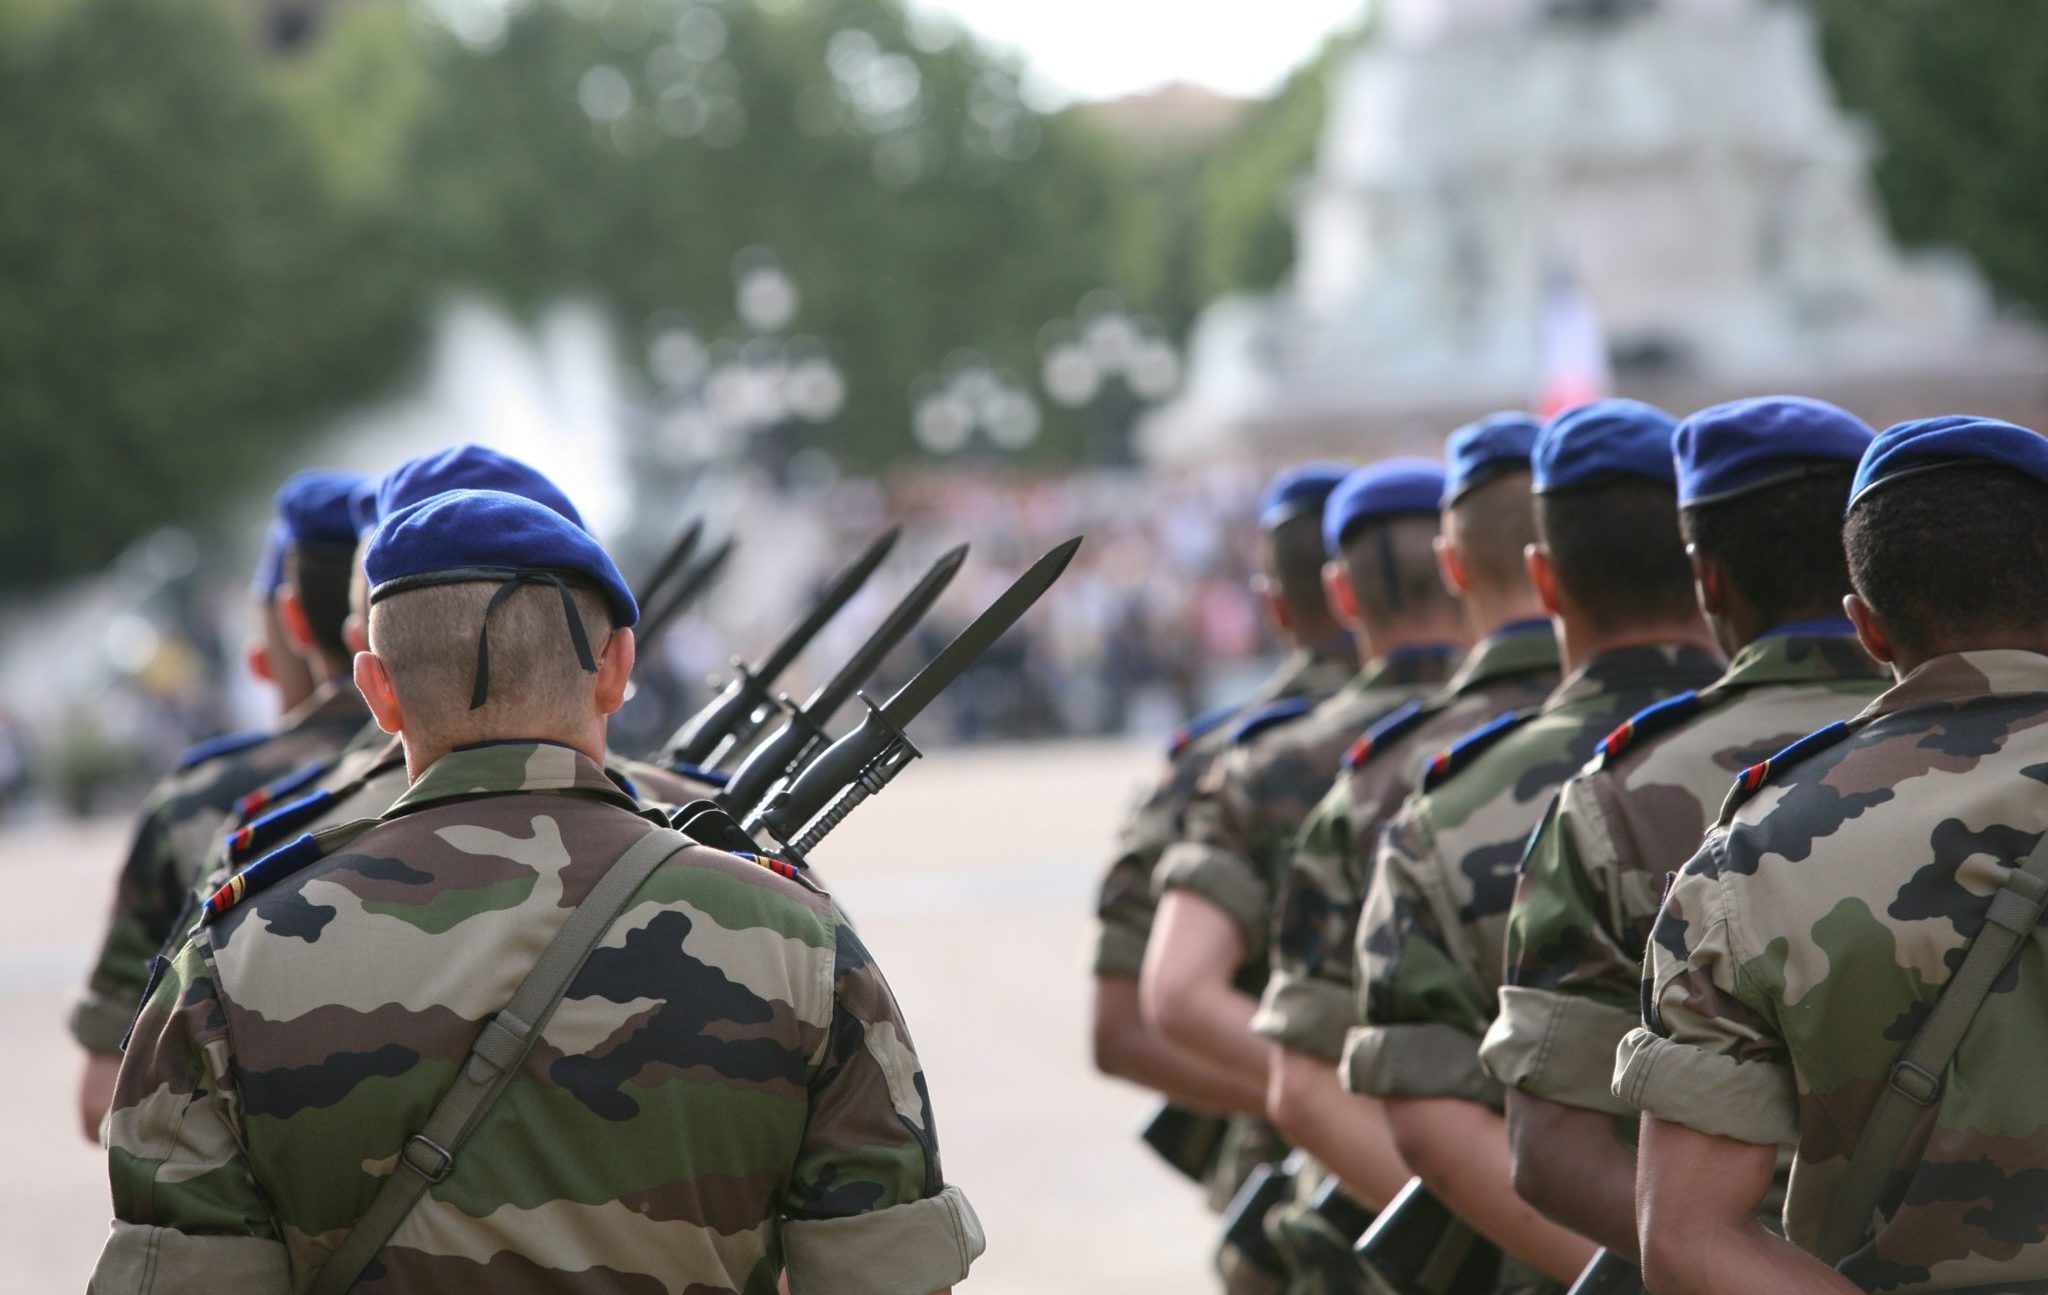 “Ushtri e përbashkët me 5 mijë trupa”, konferenca e kryeparlamentarëve të vendeve të BE miraton krijimin e forcës për t’ju përgjigjur krizave!